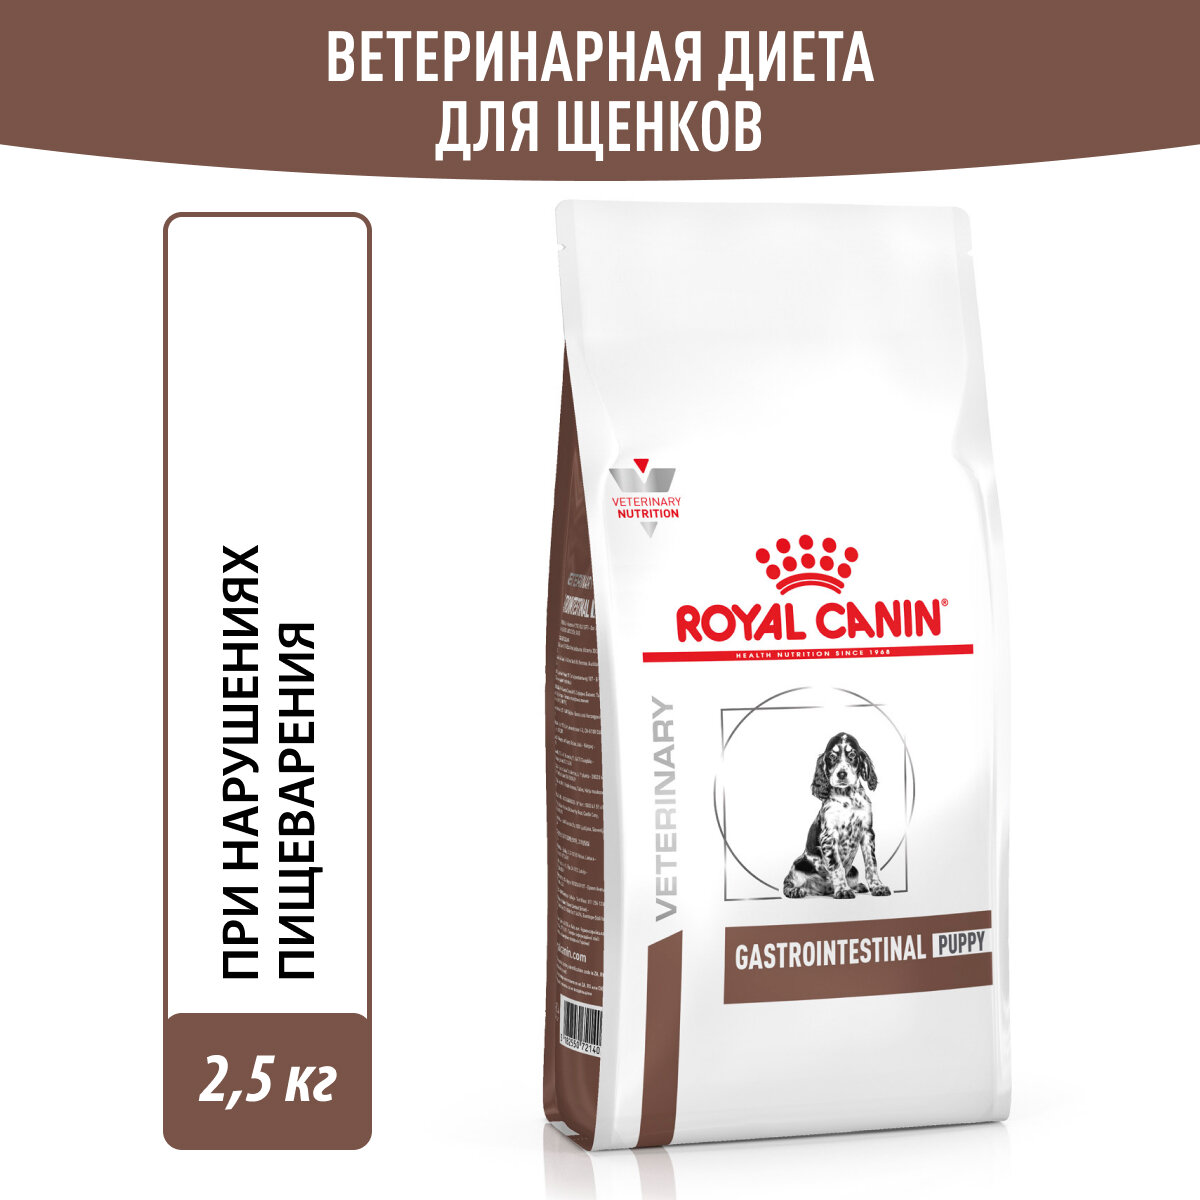 Royal Canin Gastrointestinal Puppy корм для щенков при нарушениях пищеварения Диетический, 2,5 кг.